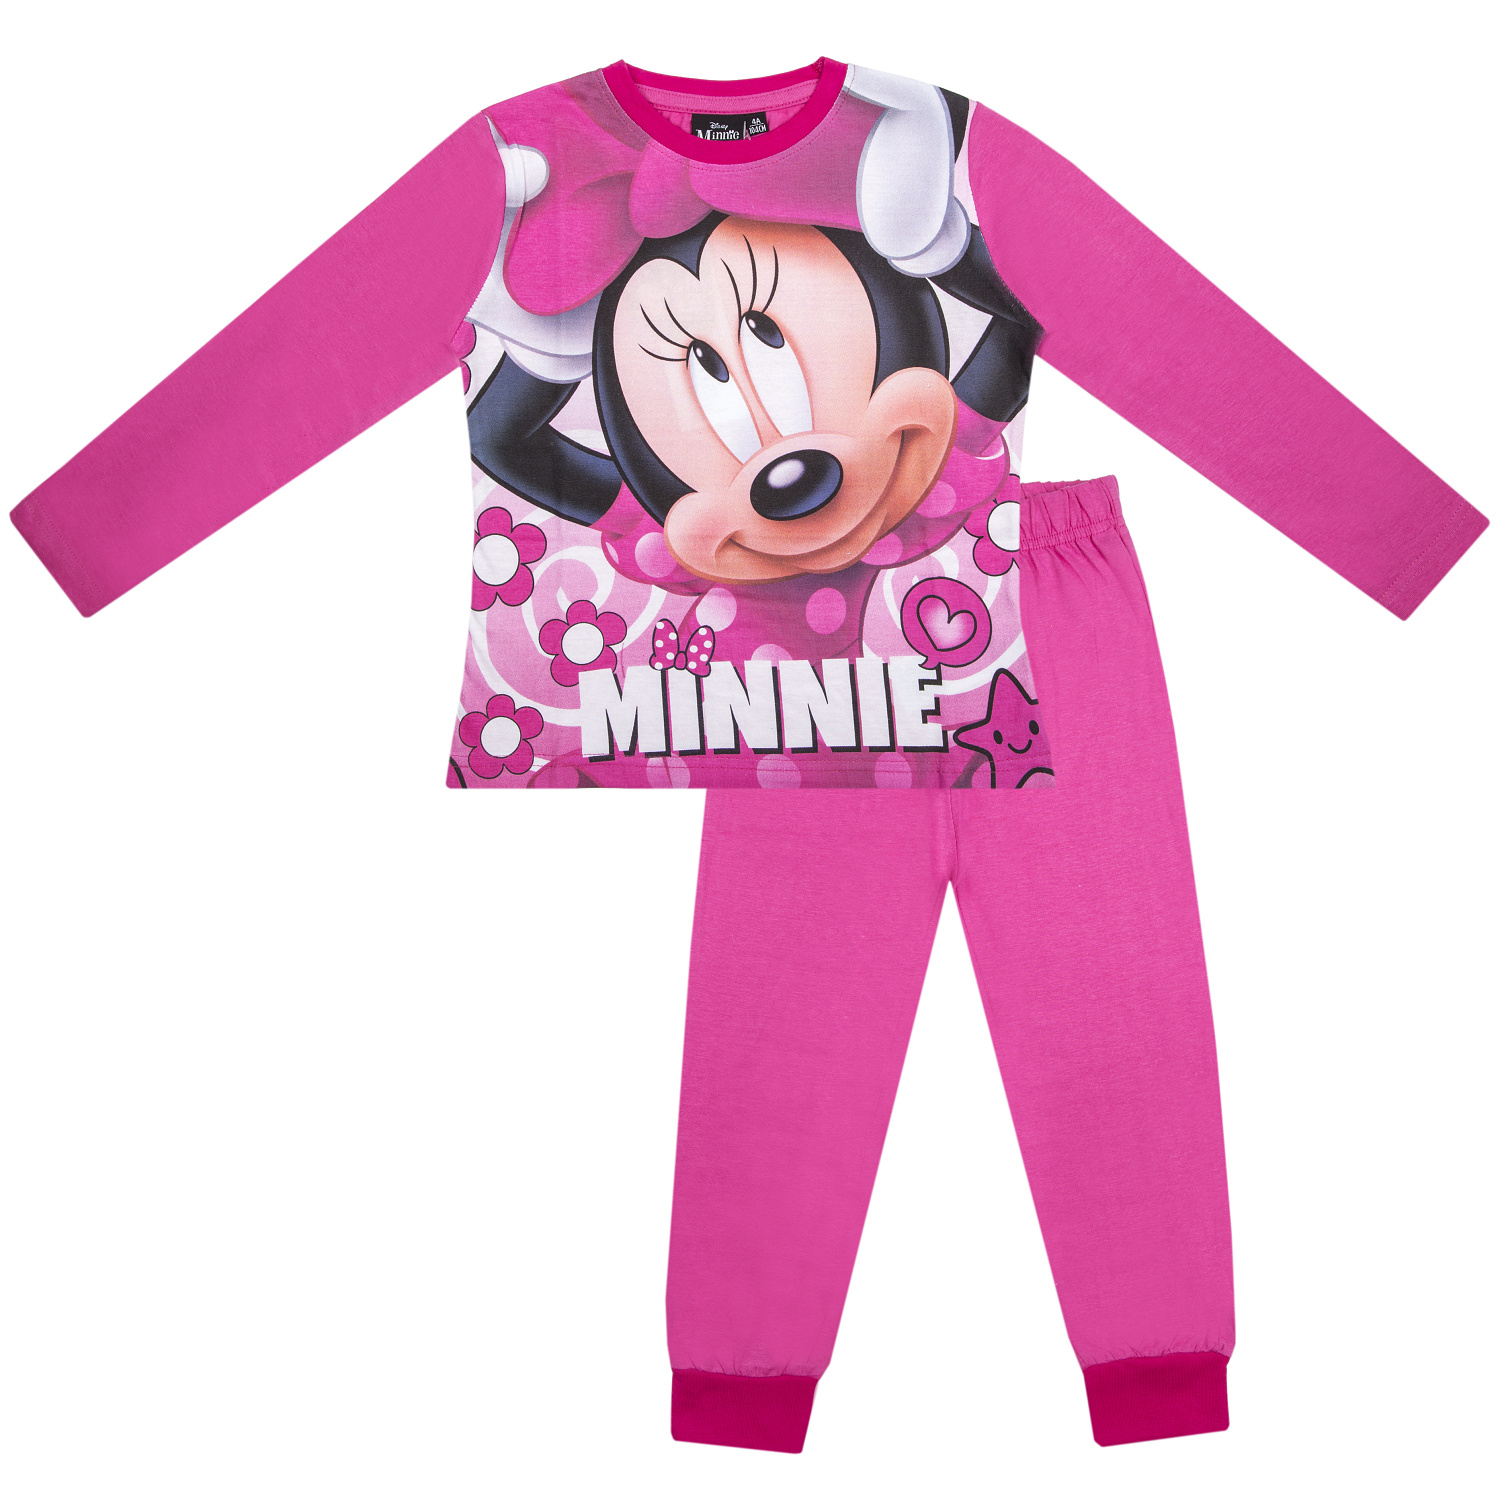 Minnie - licence Dívčí pyžamo - Minnie G-483, růžová světlejší Barva: Růžová, Velikost: 122